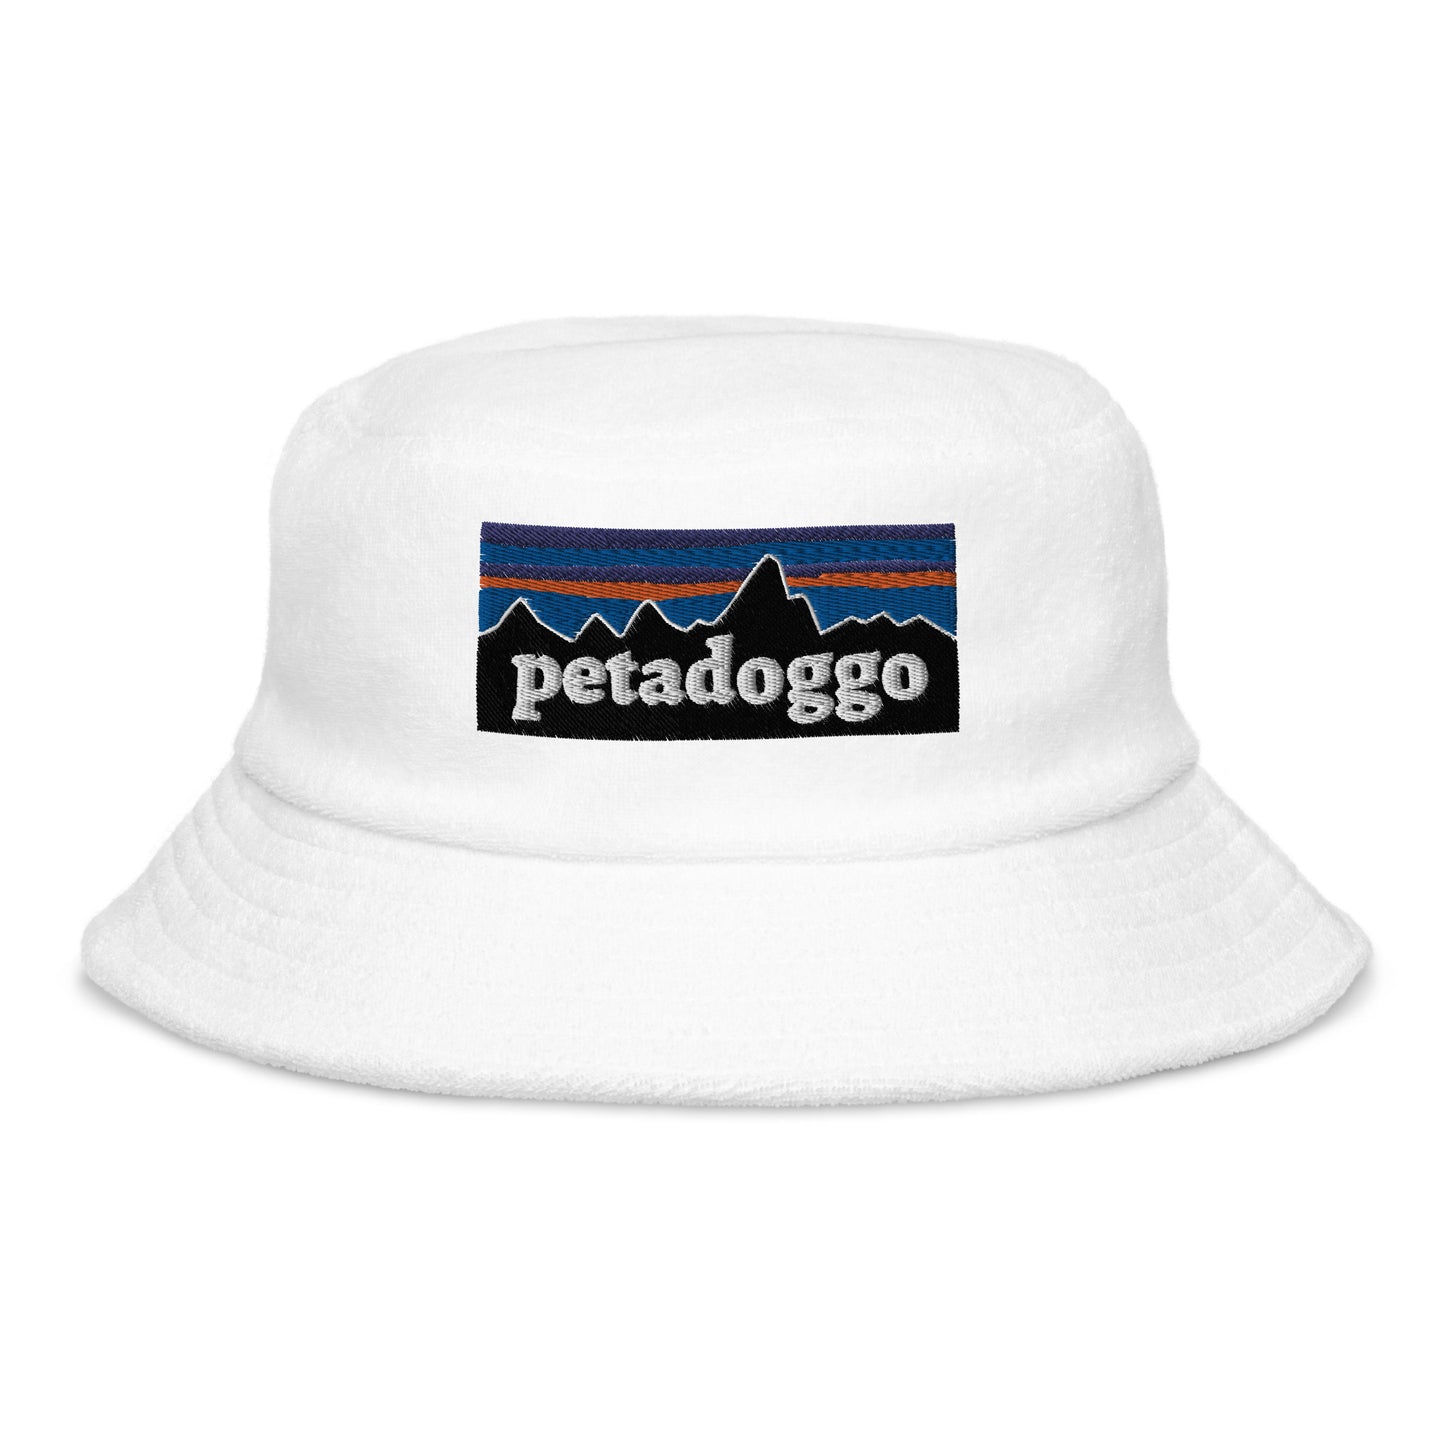 Petadoggo Terry cloth bucket hat